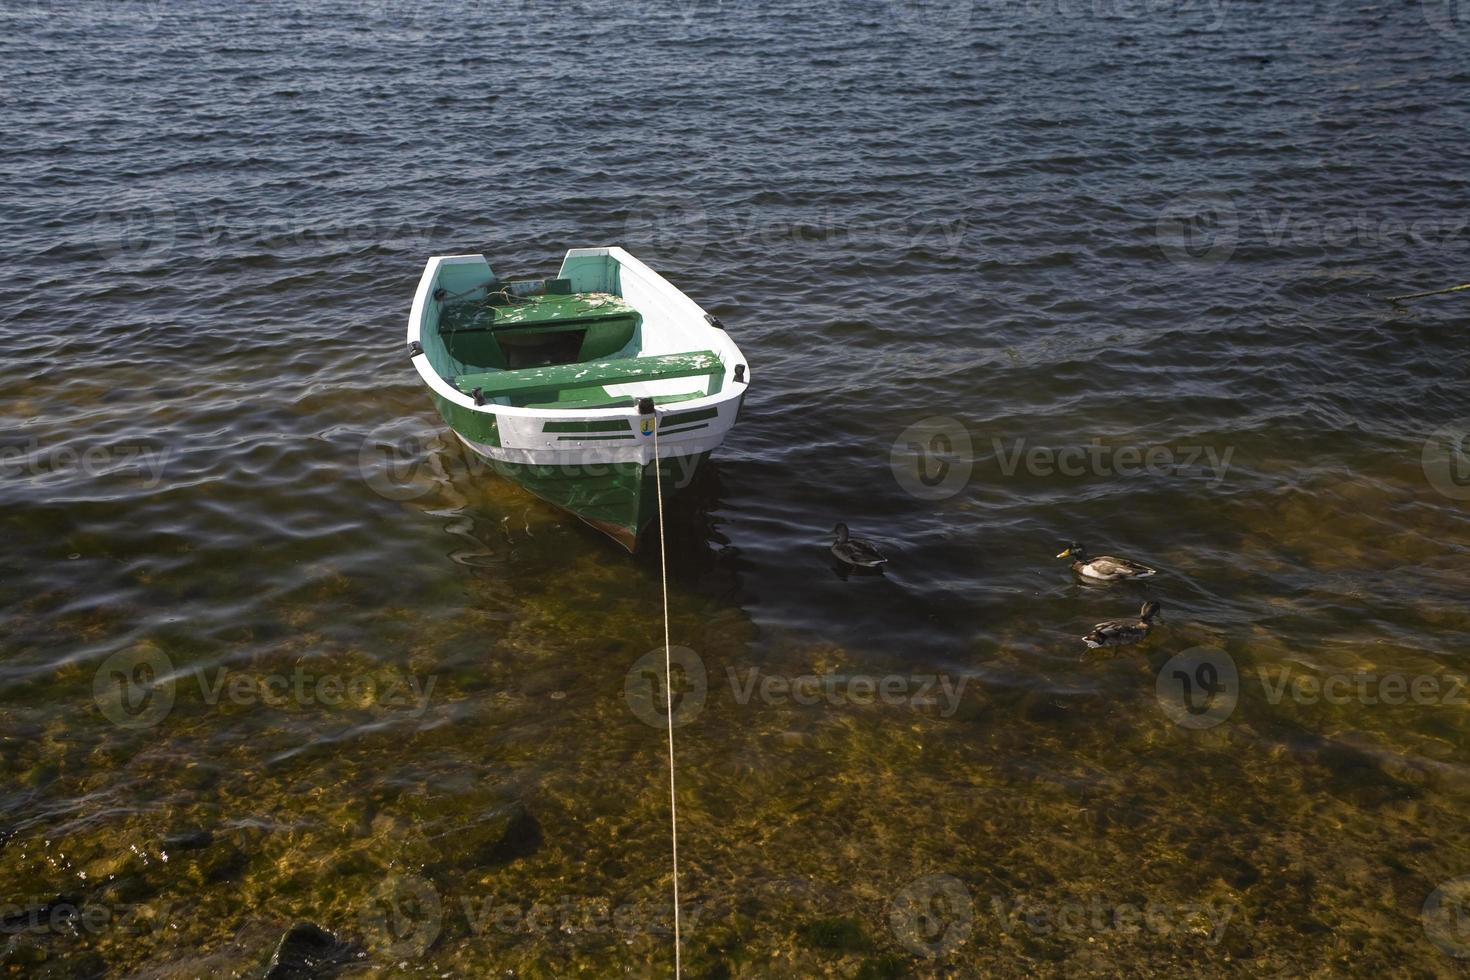 tömma rodd båt på de vatten på en sommar dag foto